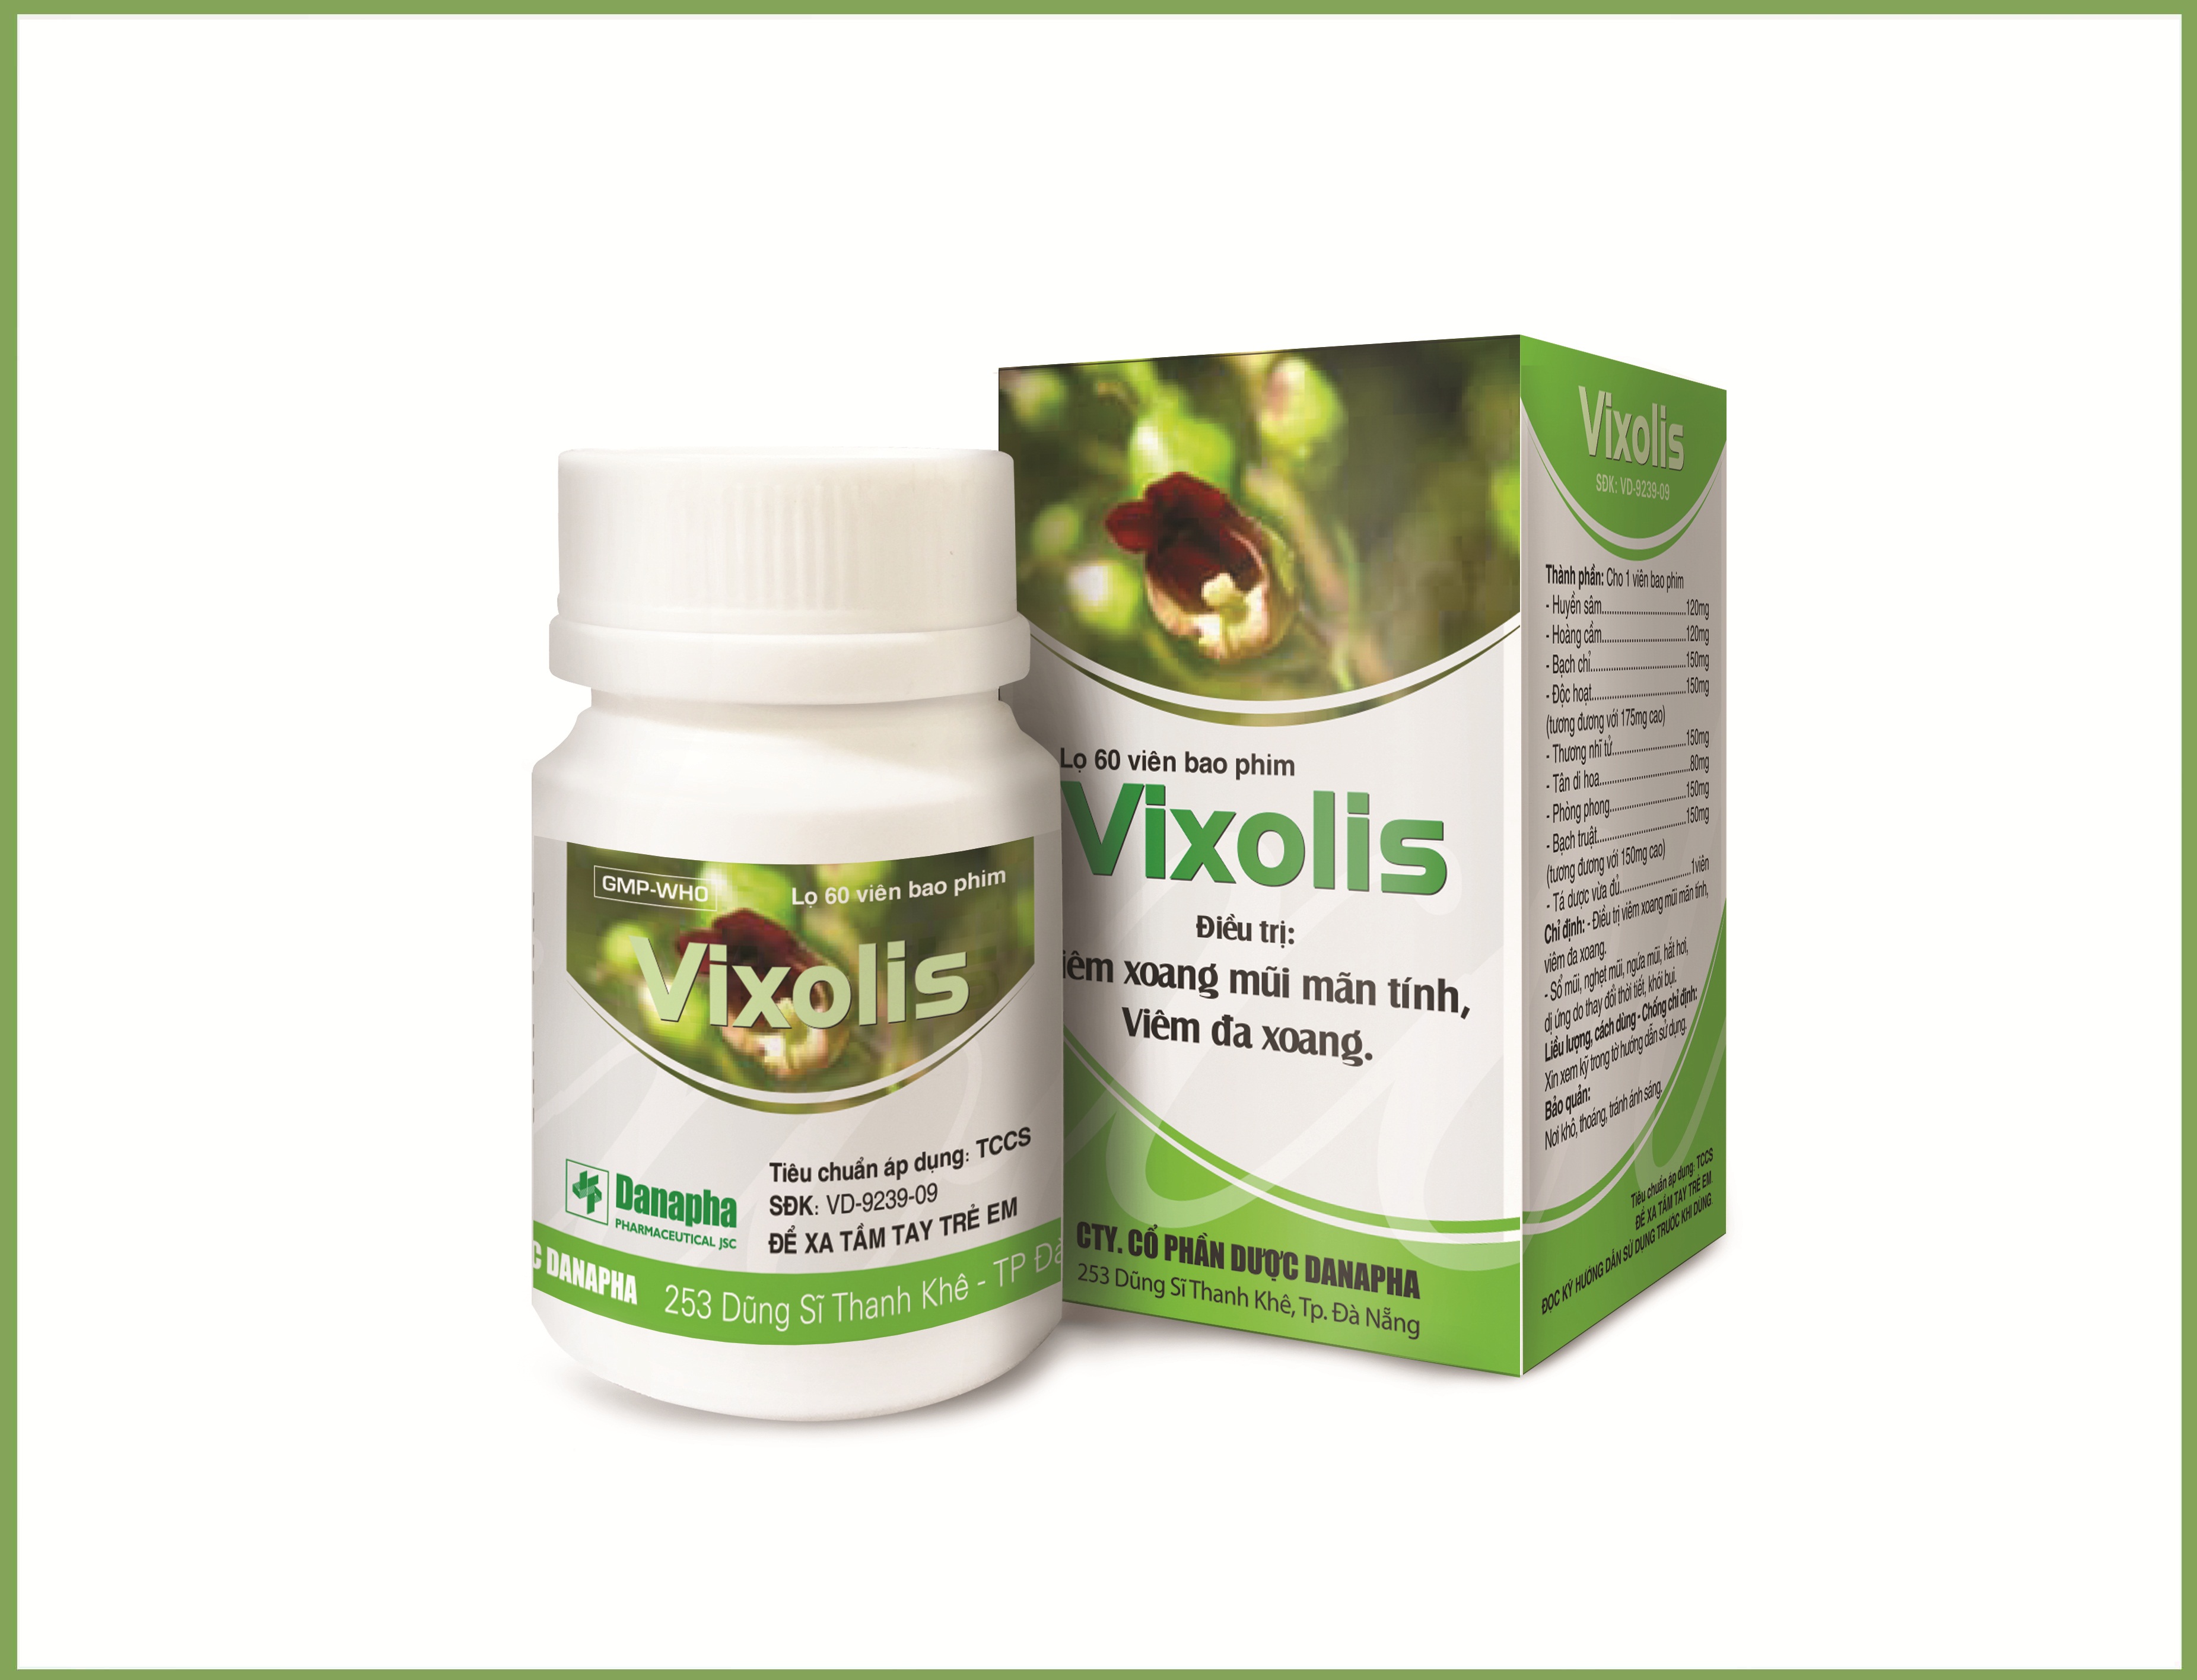 Vixolis - Để không còn nổi lo viêm xoang